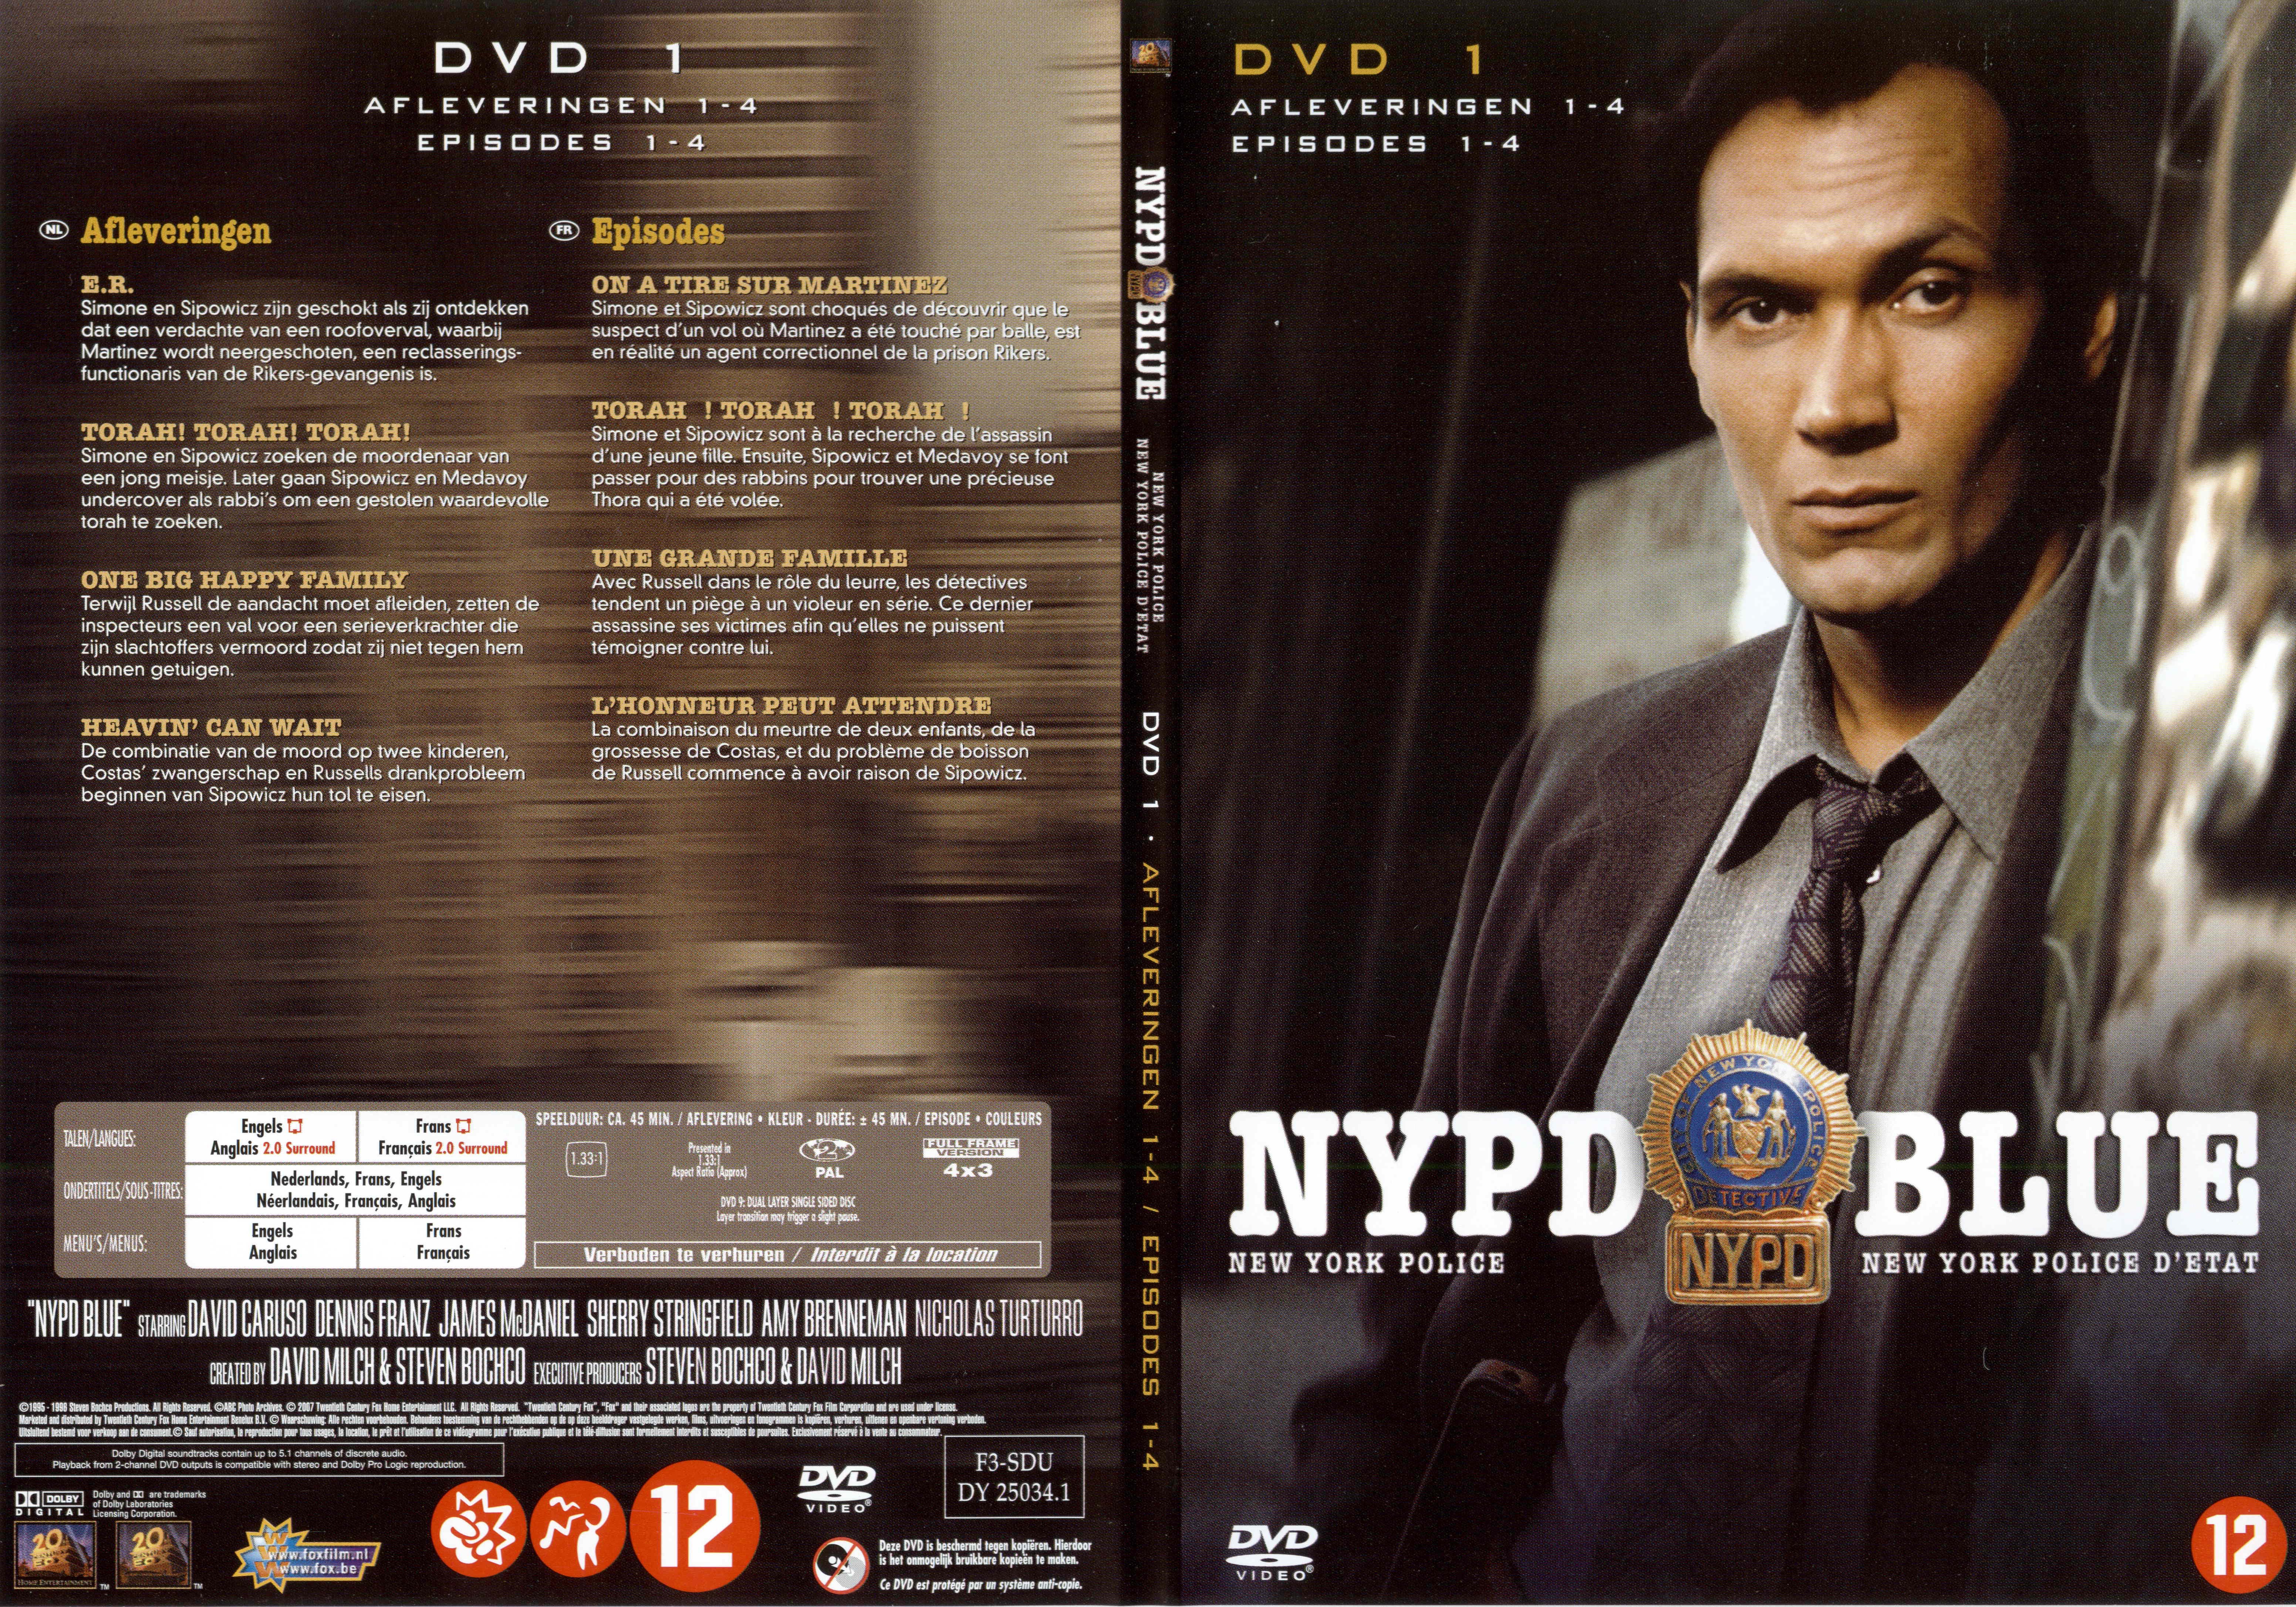 Jaquette DVD NYPD Blue saison 03 dvd 01